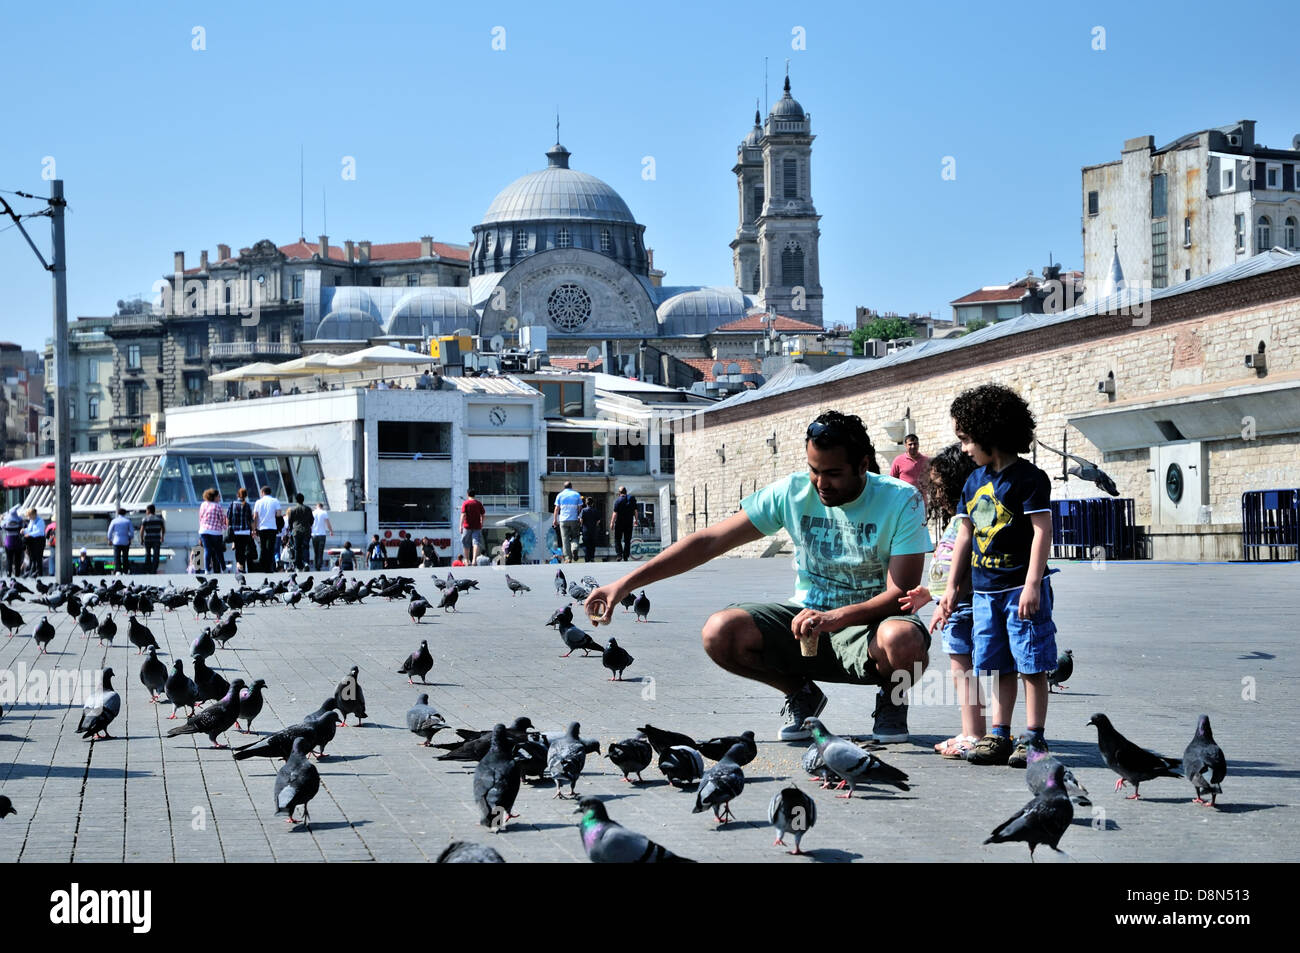 Vater und Familie füttern Tauben am Taksim-Platz, Istanbul, Türkei Stockfoto